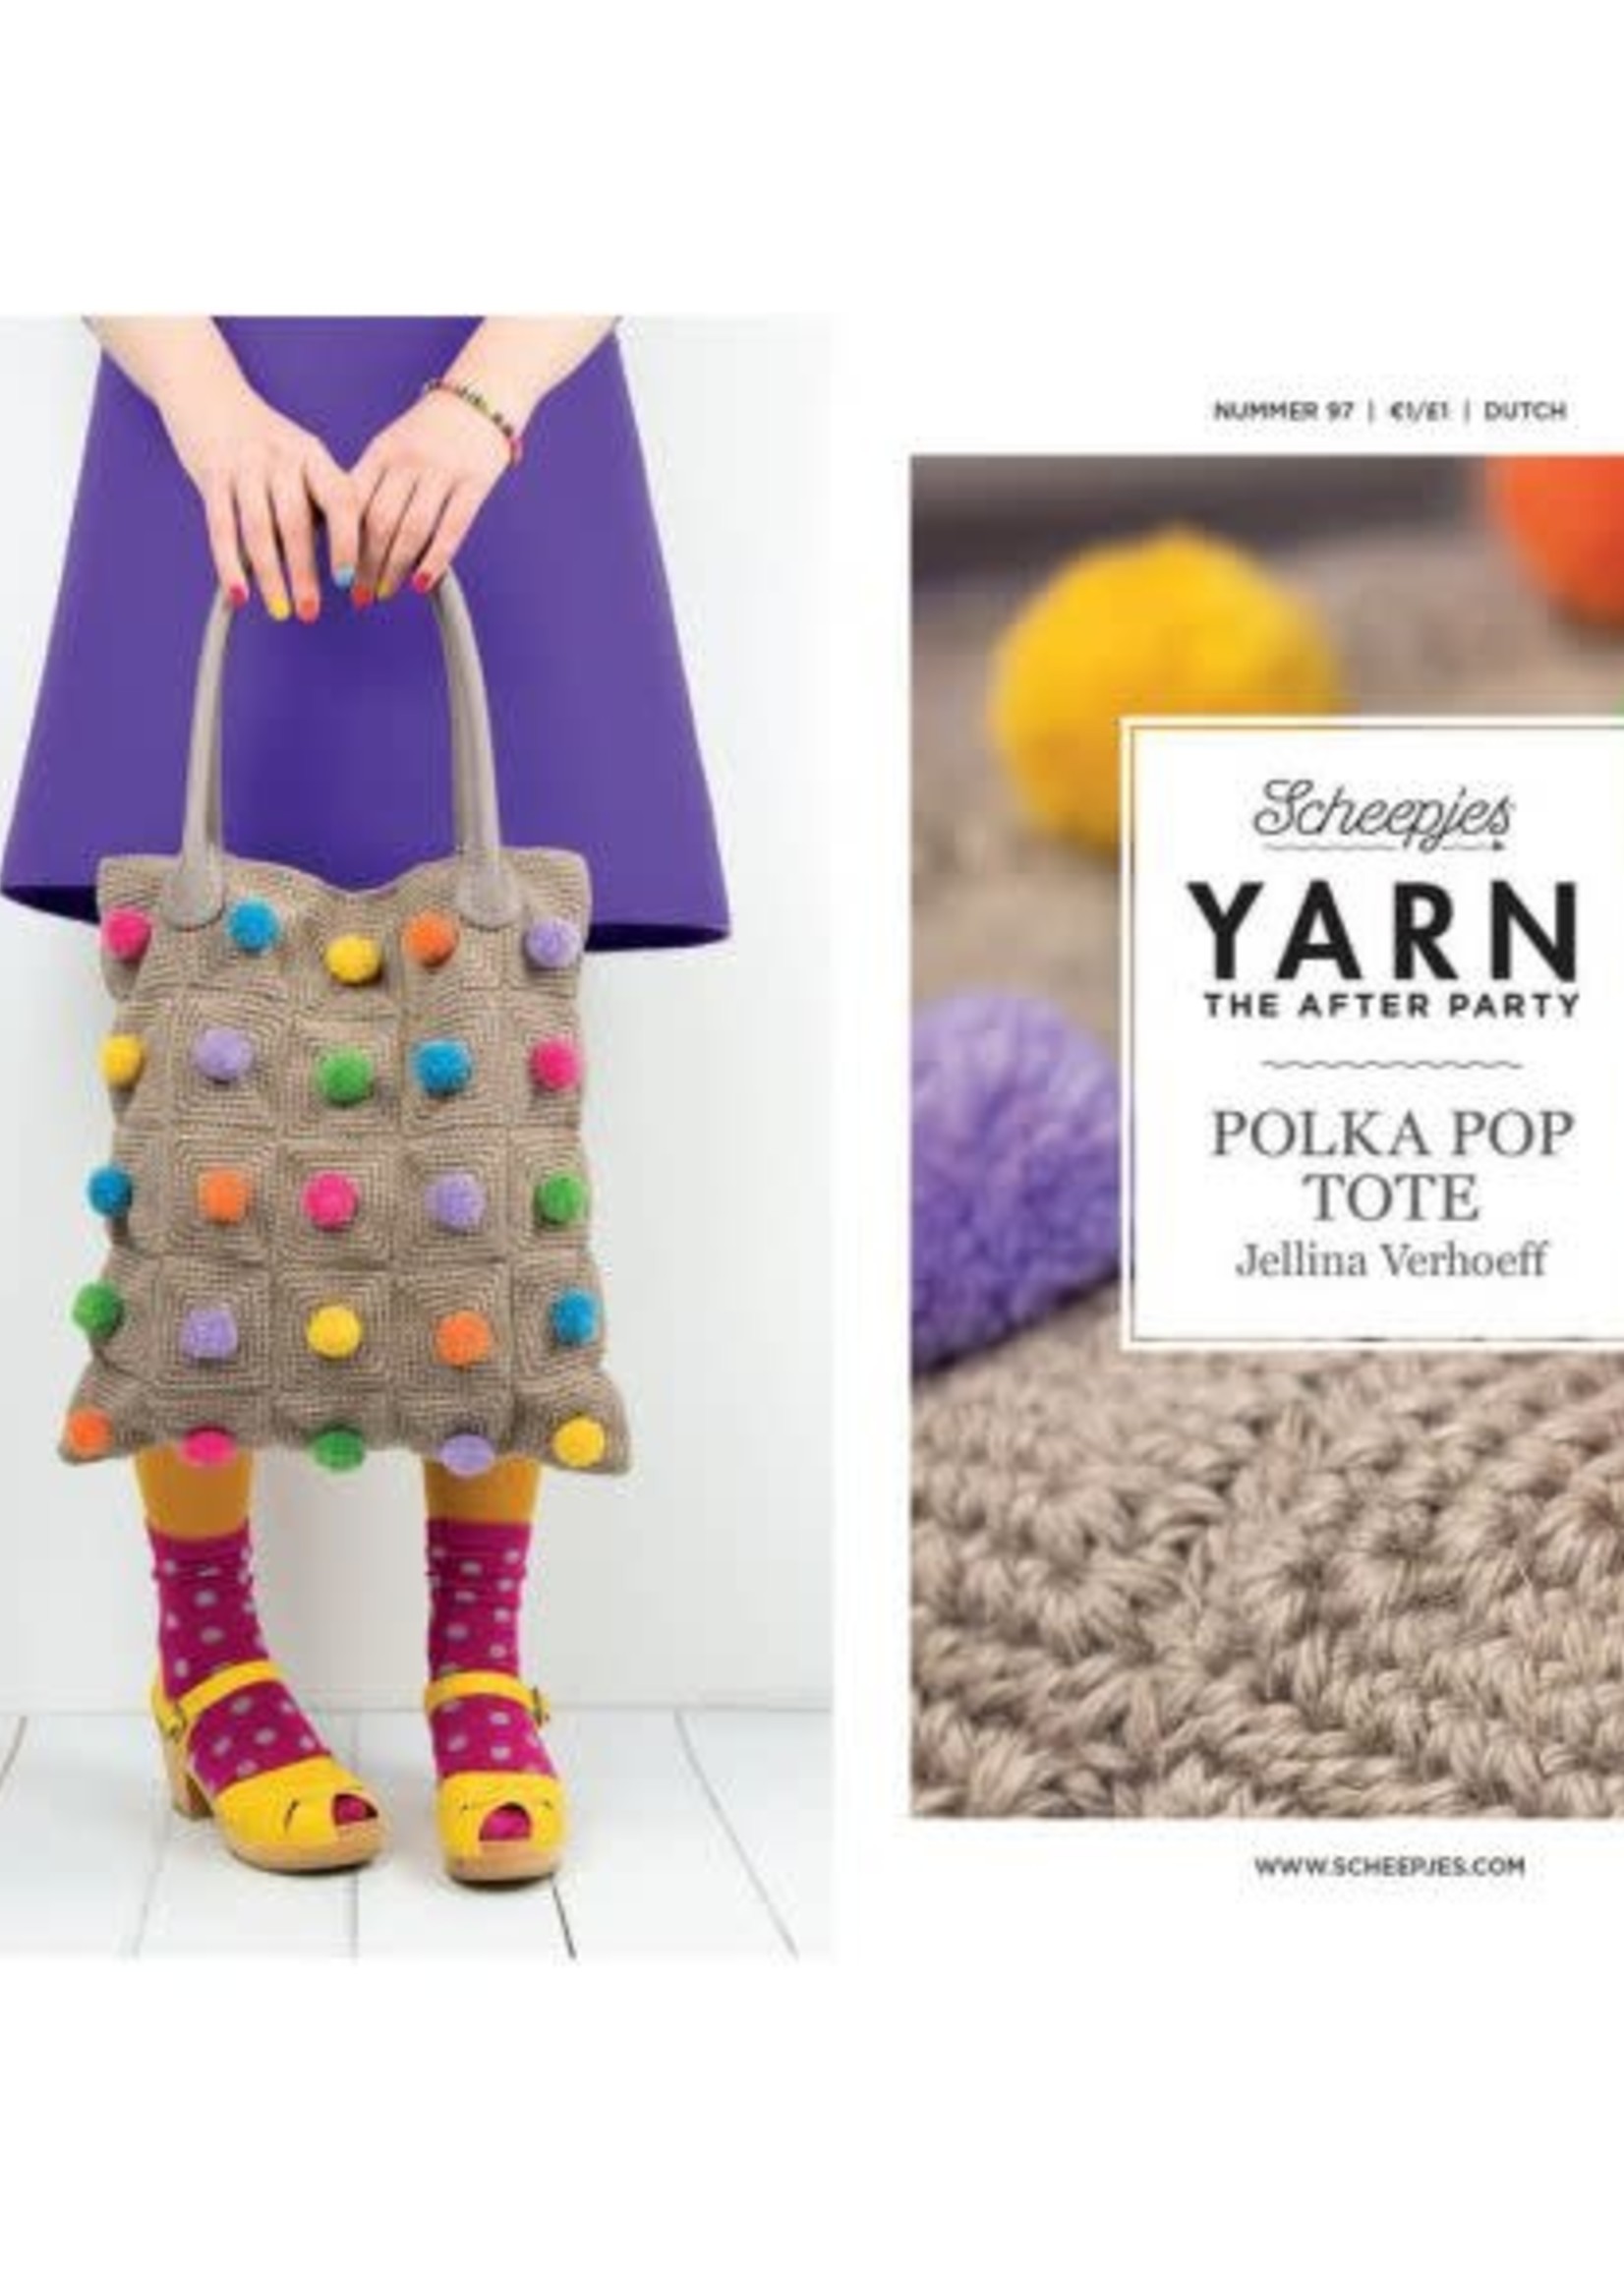 Yarn Polka Pop Tote